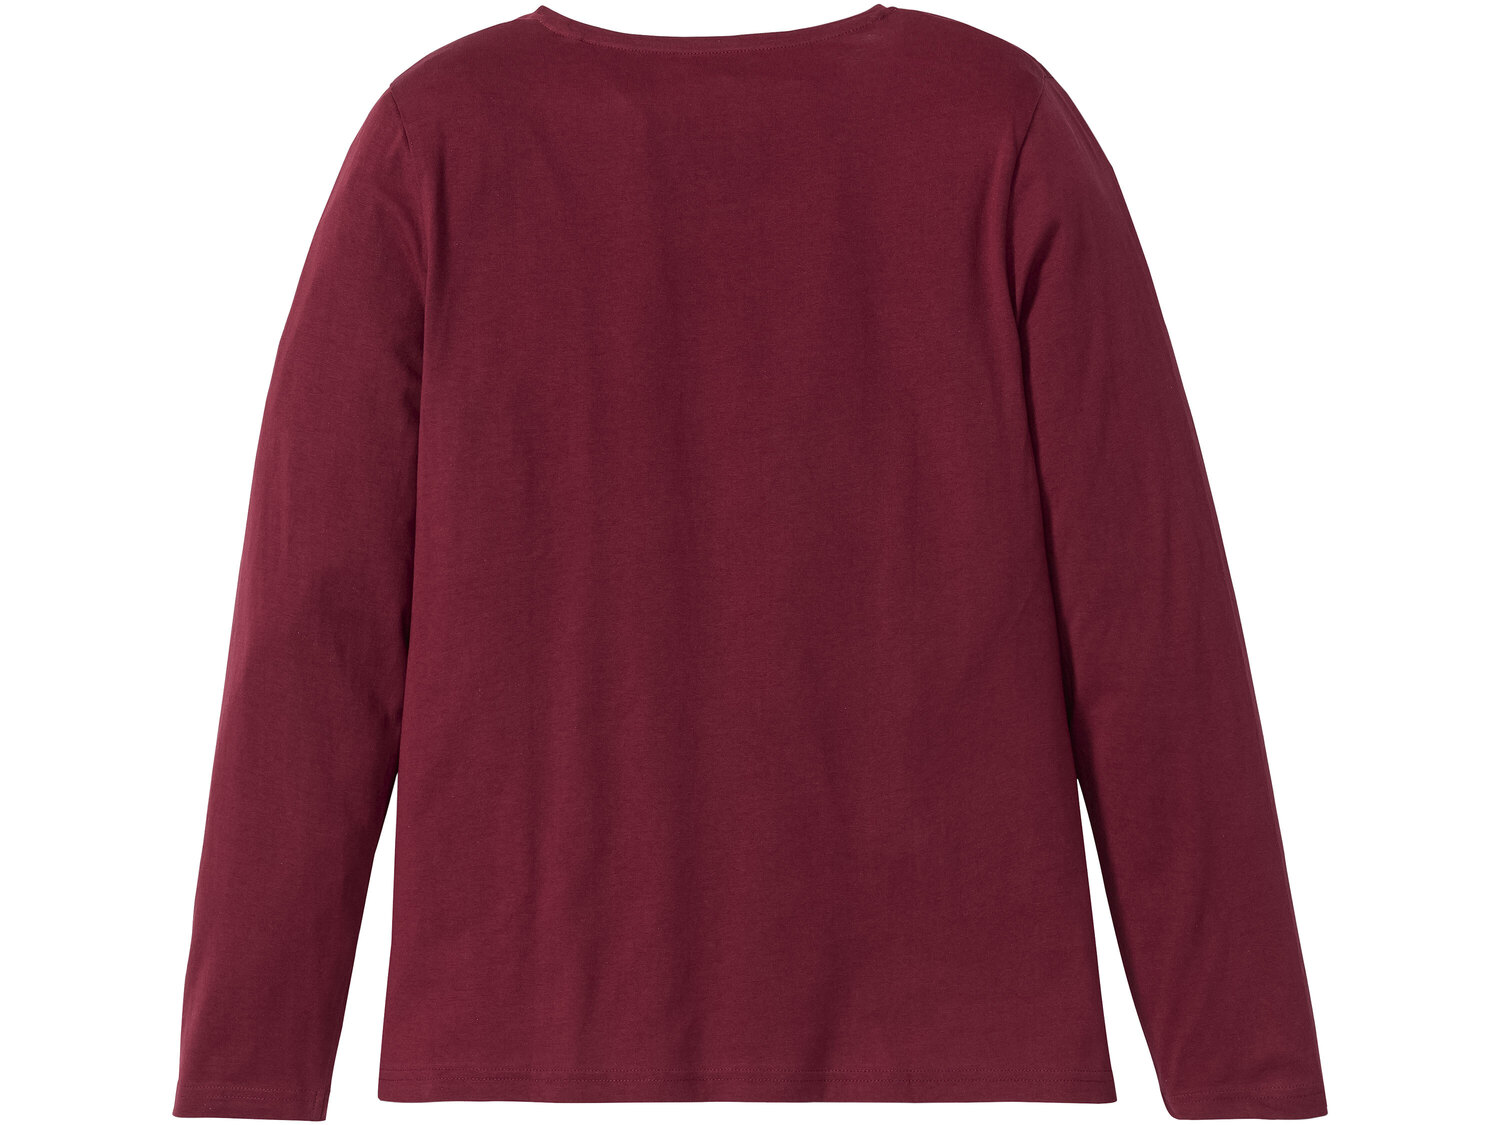 Piżama z bawełny Esmara Lingerie, cena 34,99 PLN 
- 100% bawełny
- rozmiary: ...